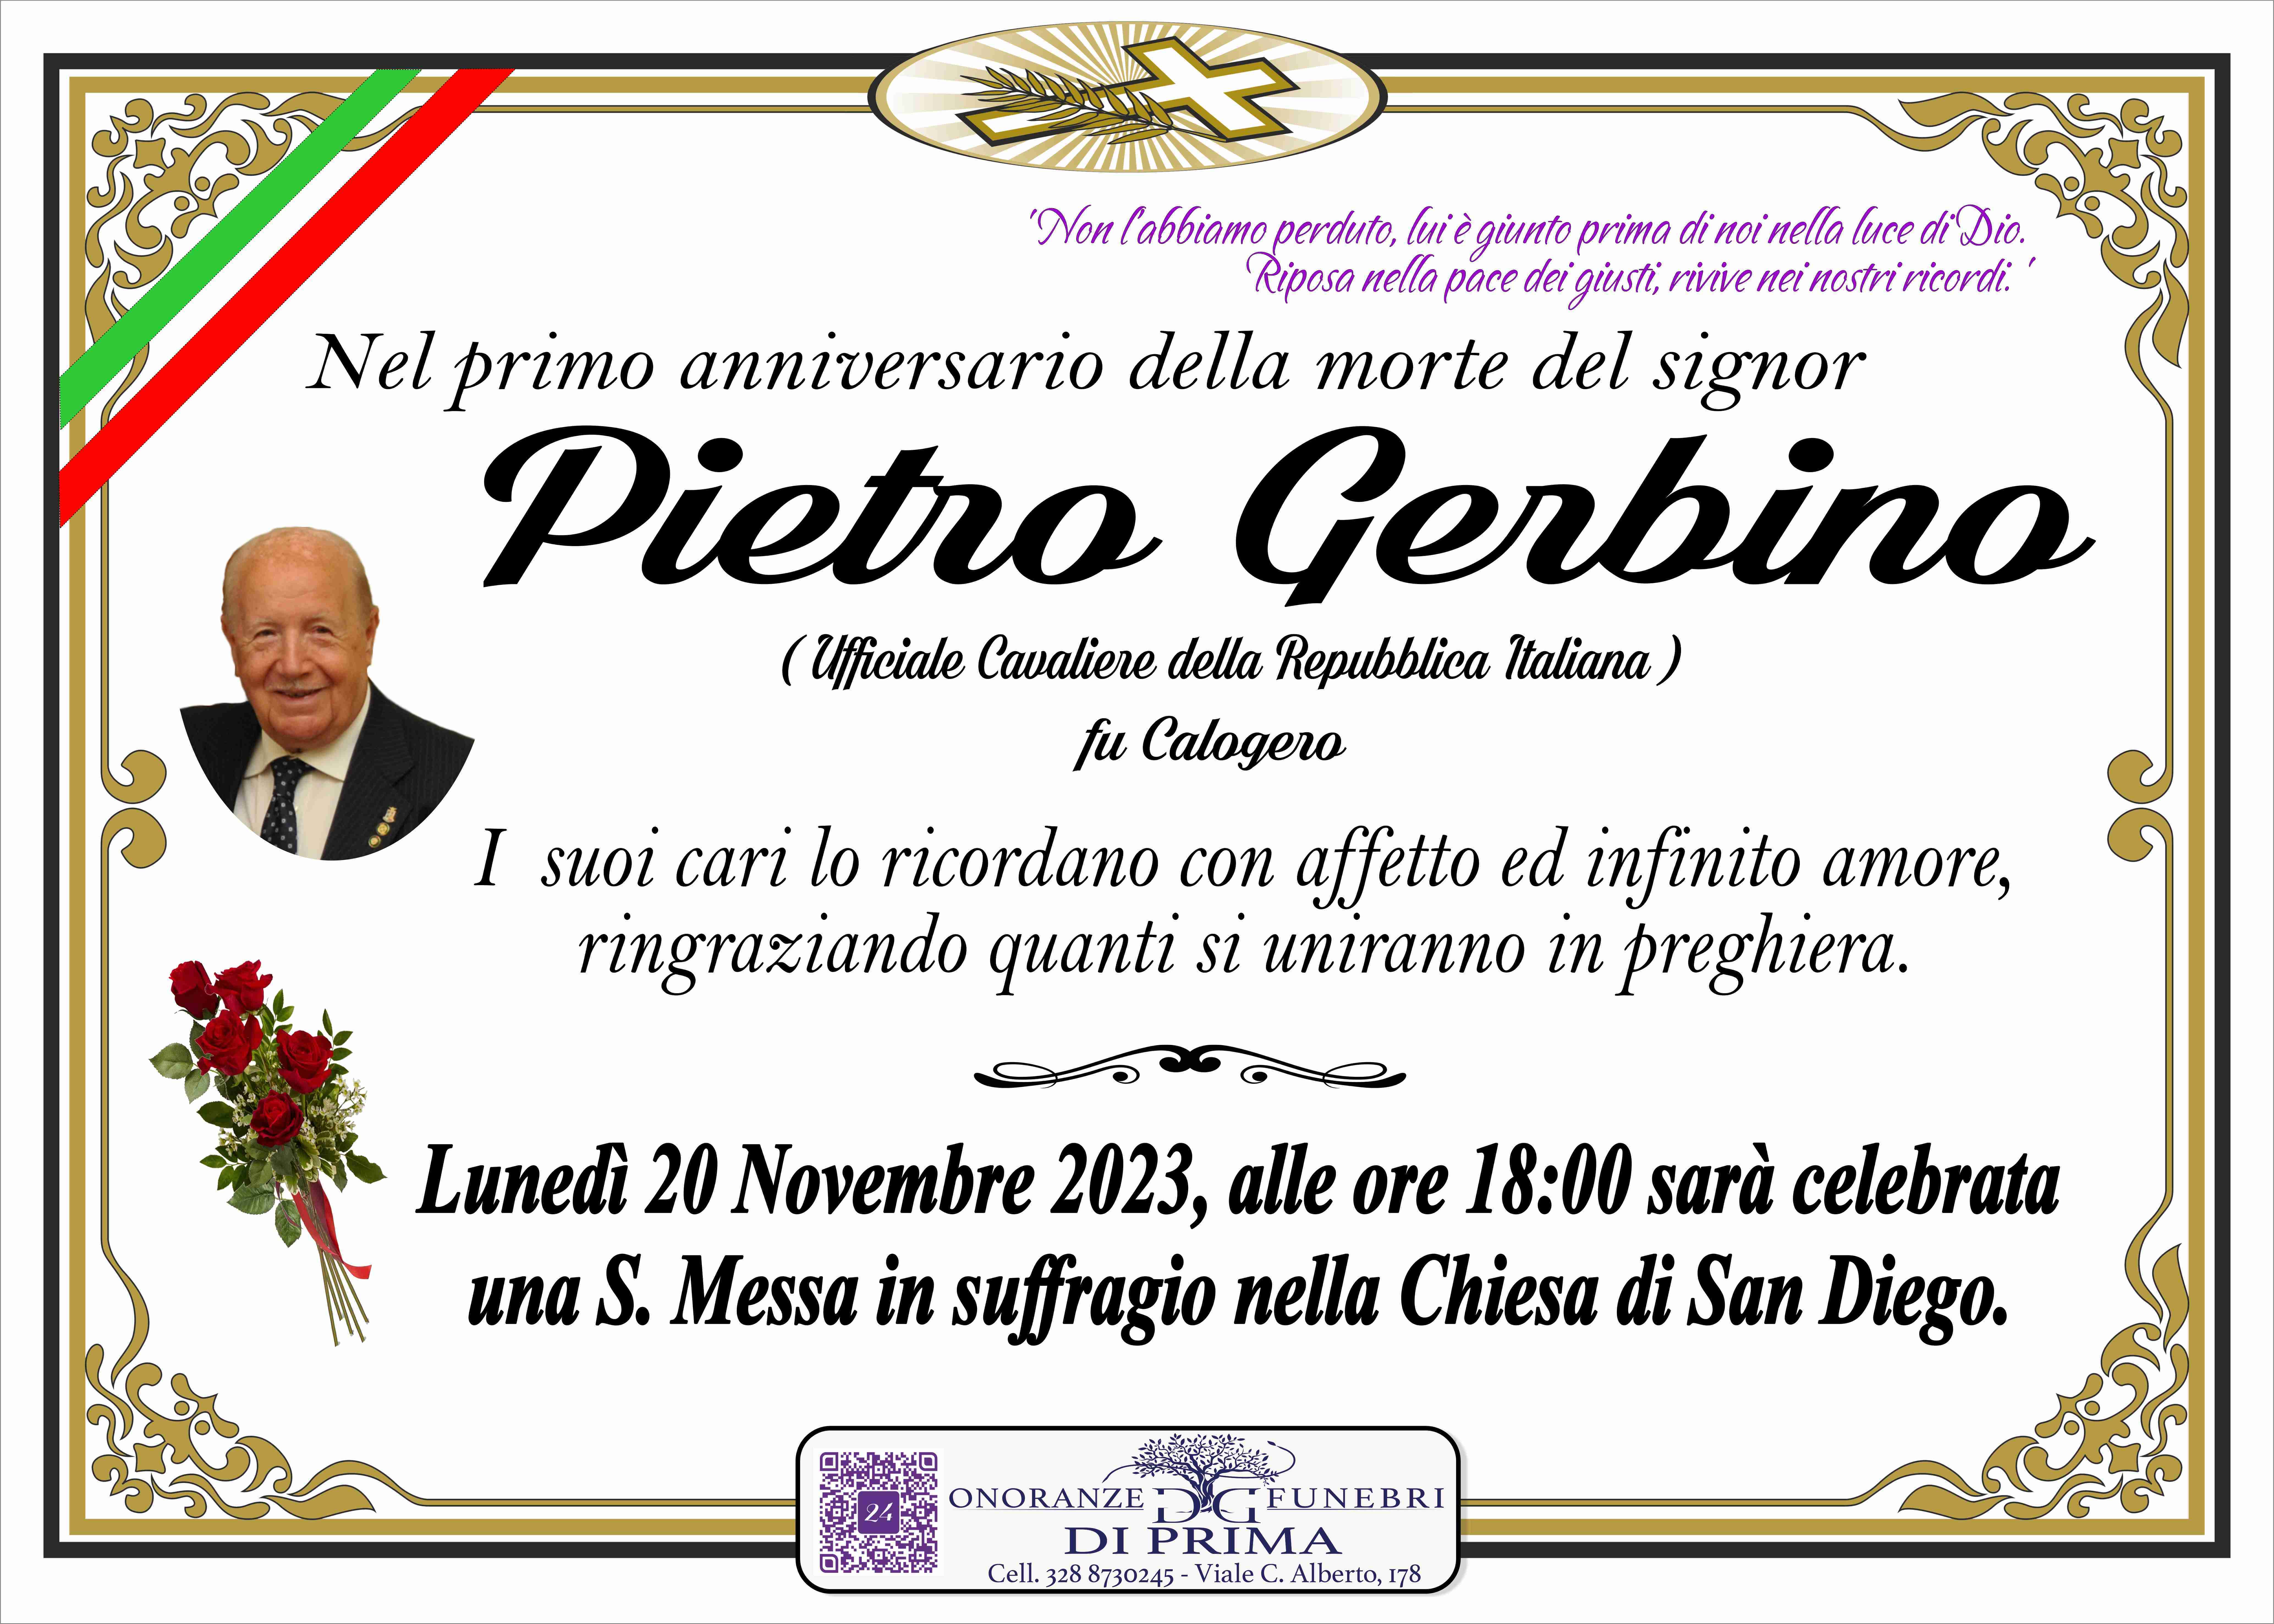 Pietro Gerbino